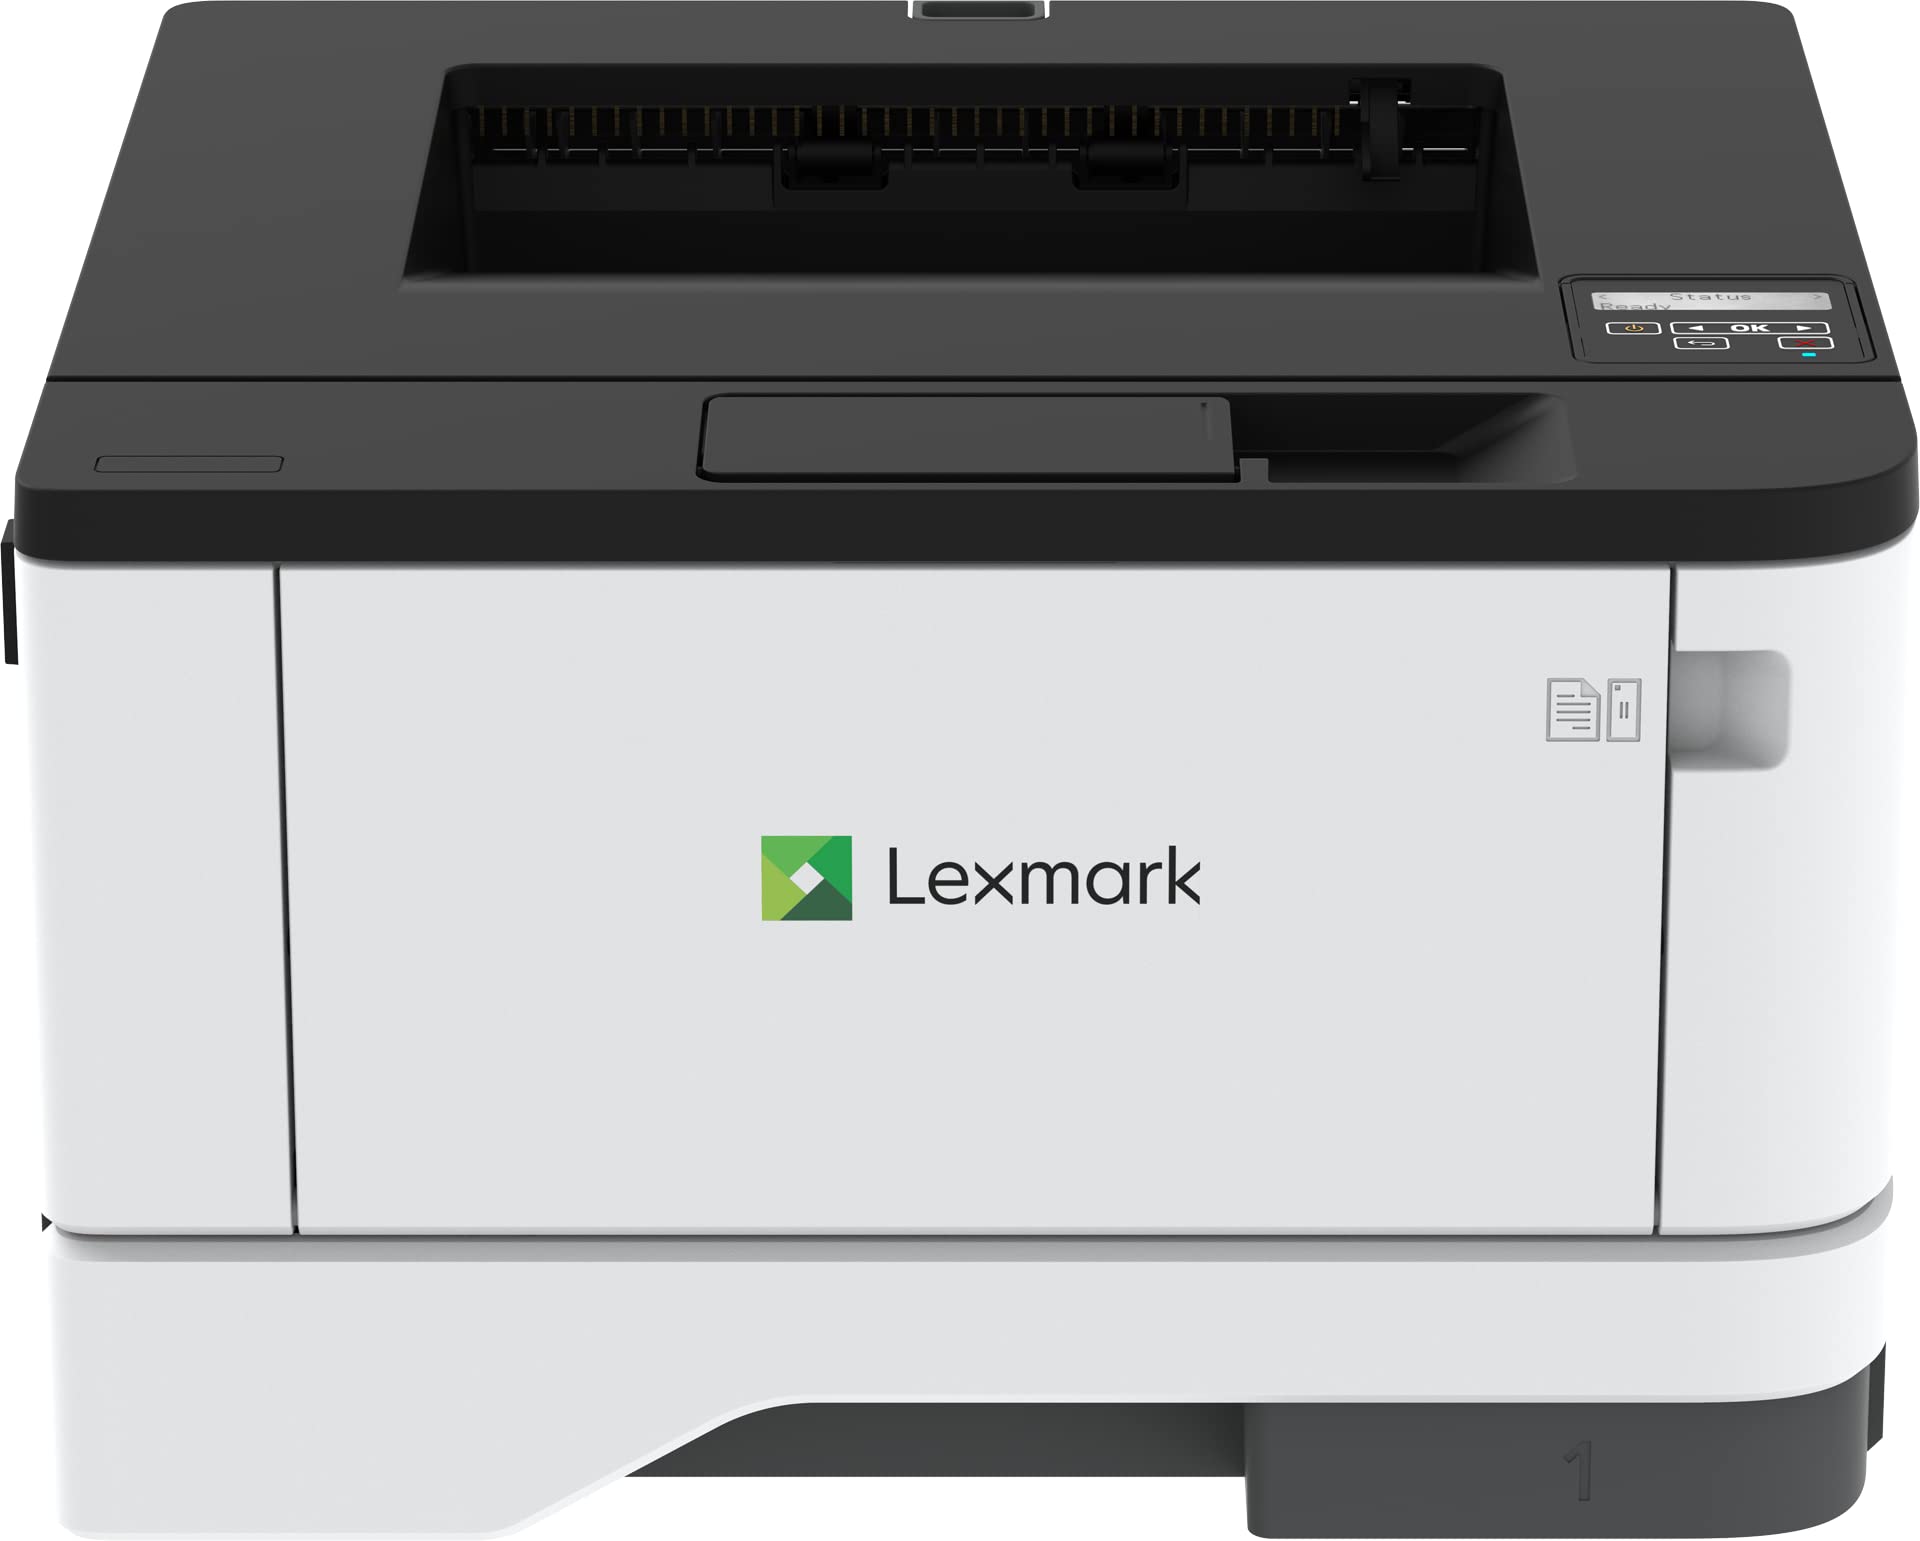  Lexmark طابعة ليزر MS331DN - أحادية اللون - 40 صفحة في الدقيقة أحادية اللون - طباعة 2400 نقطة في البوصة - طباعة تلقائية على...